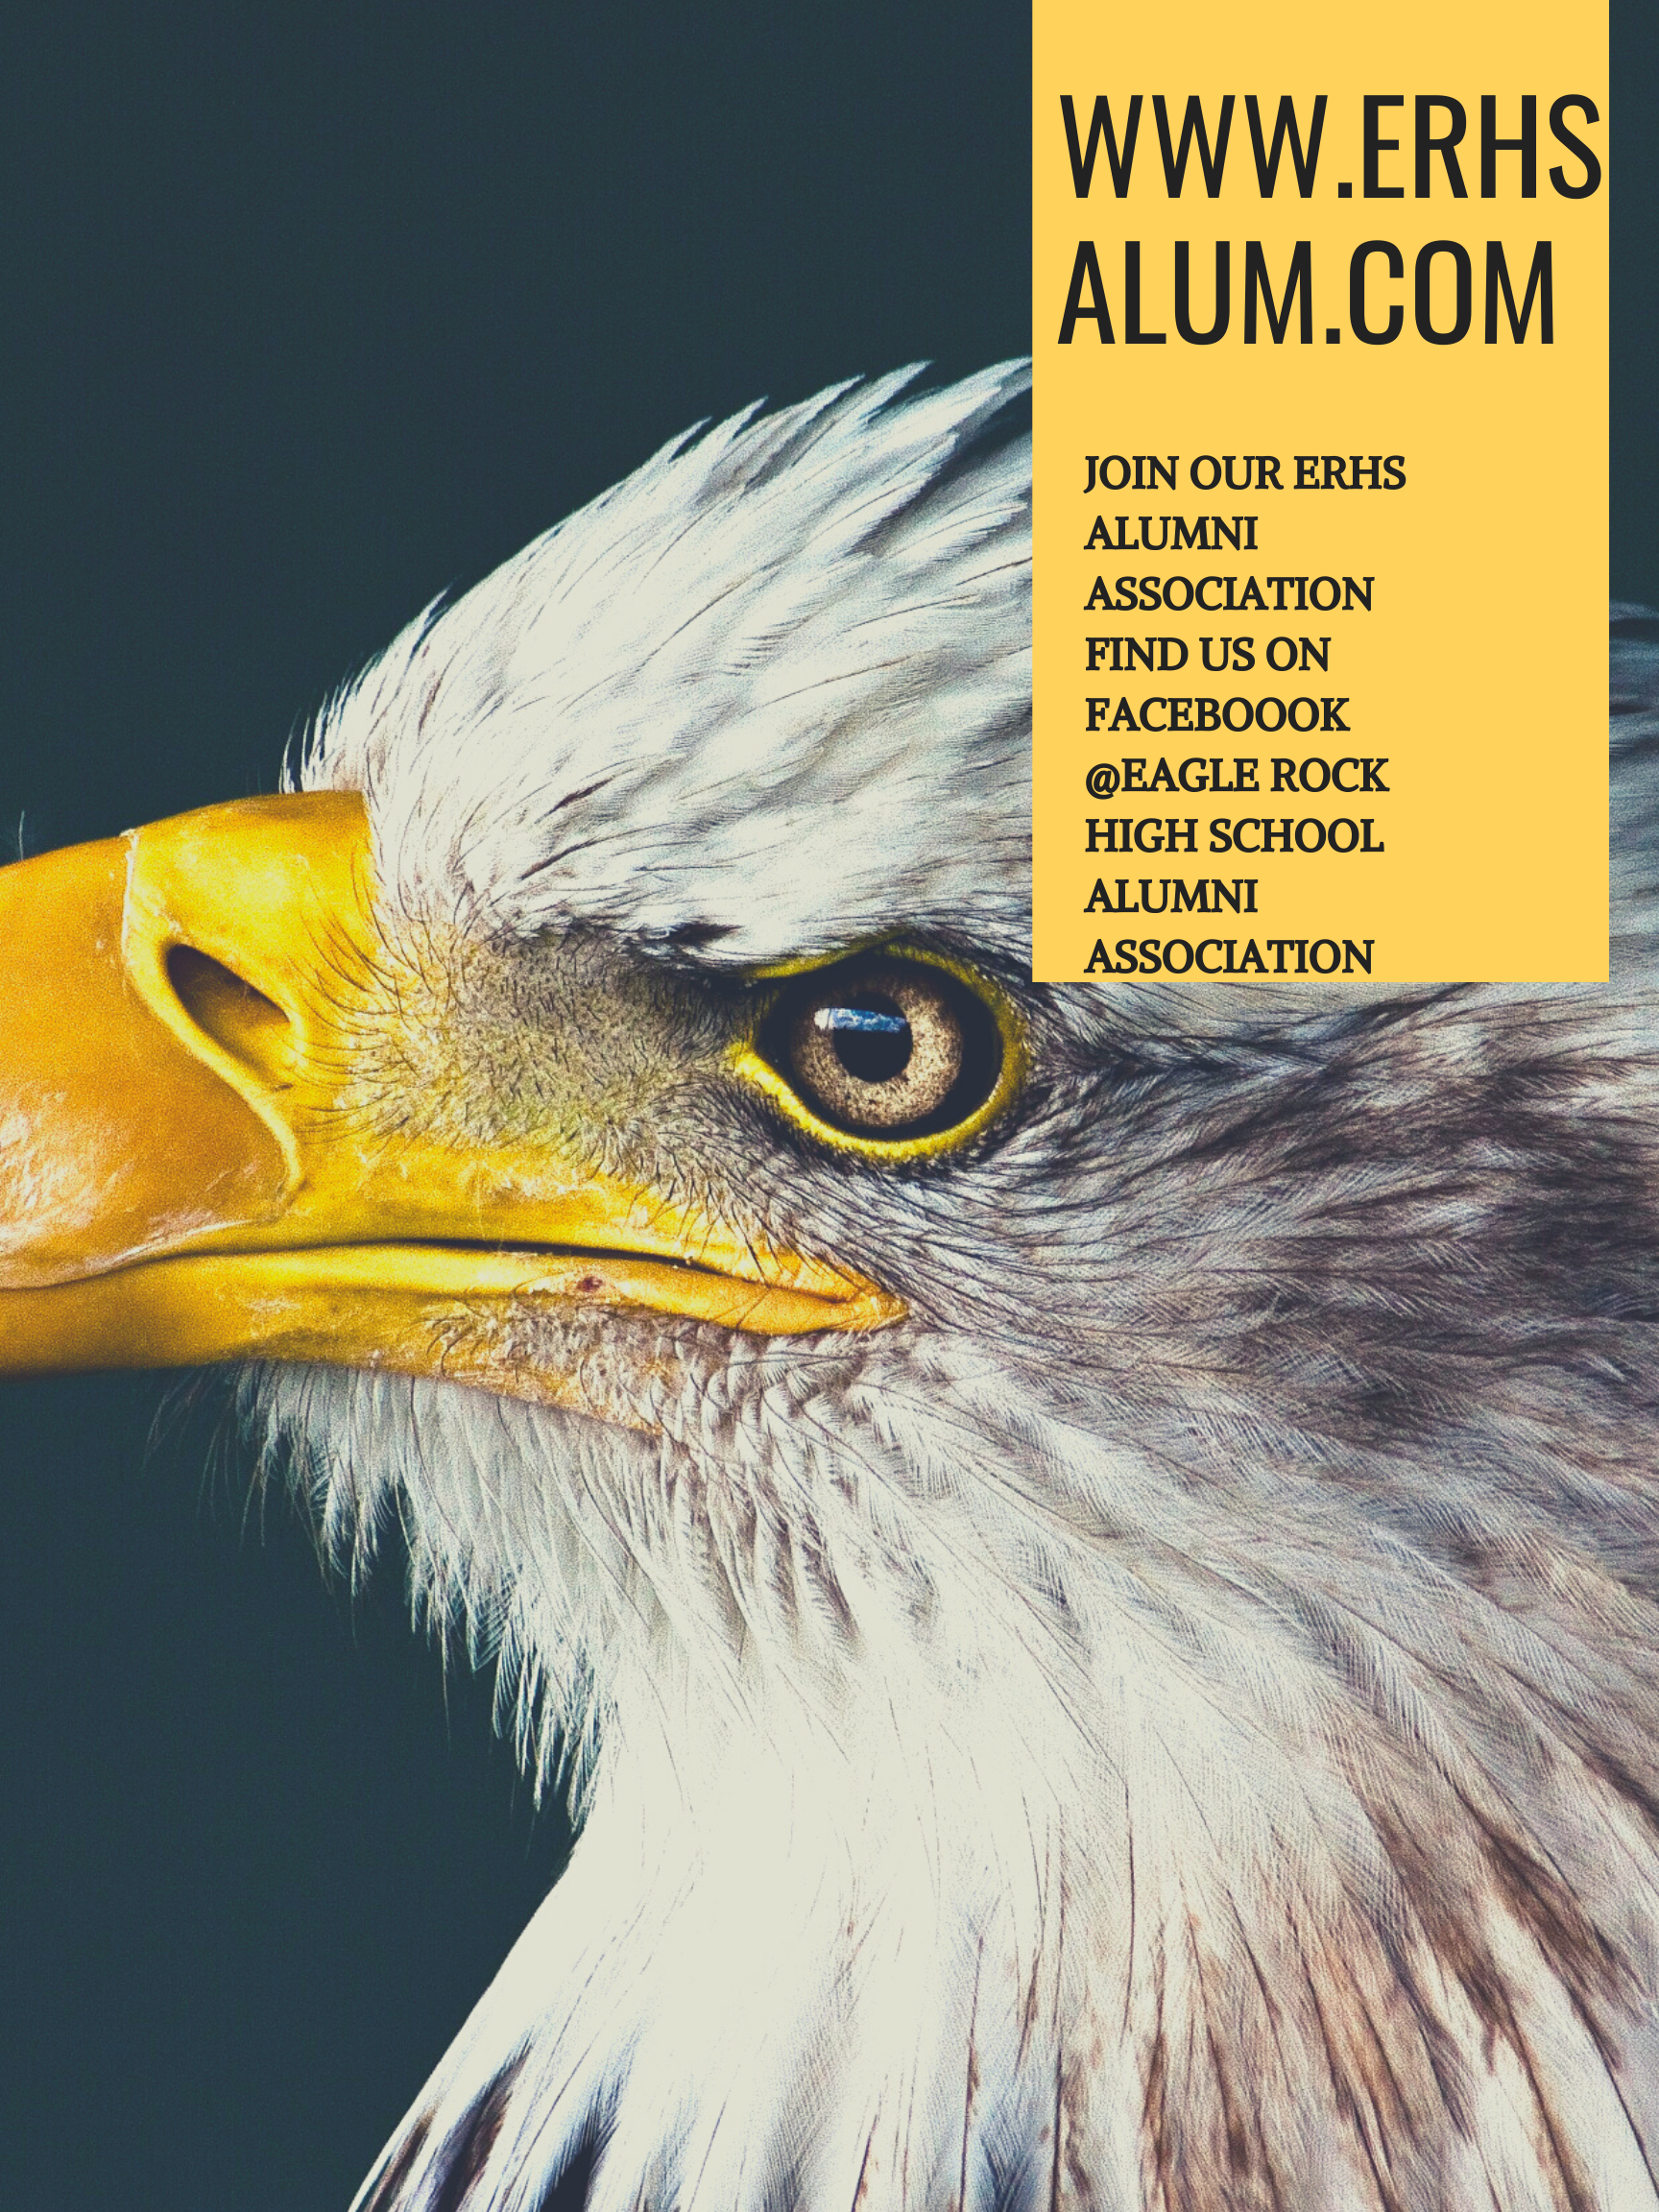 ERHS Alumni Association - see flyer for website or Facebook to join